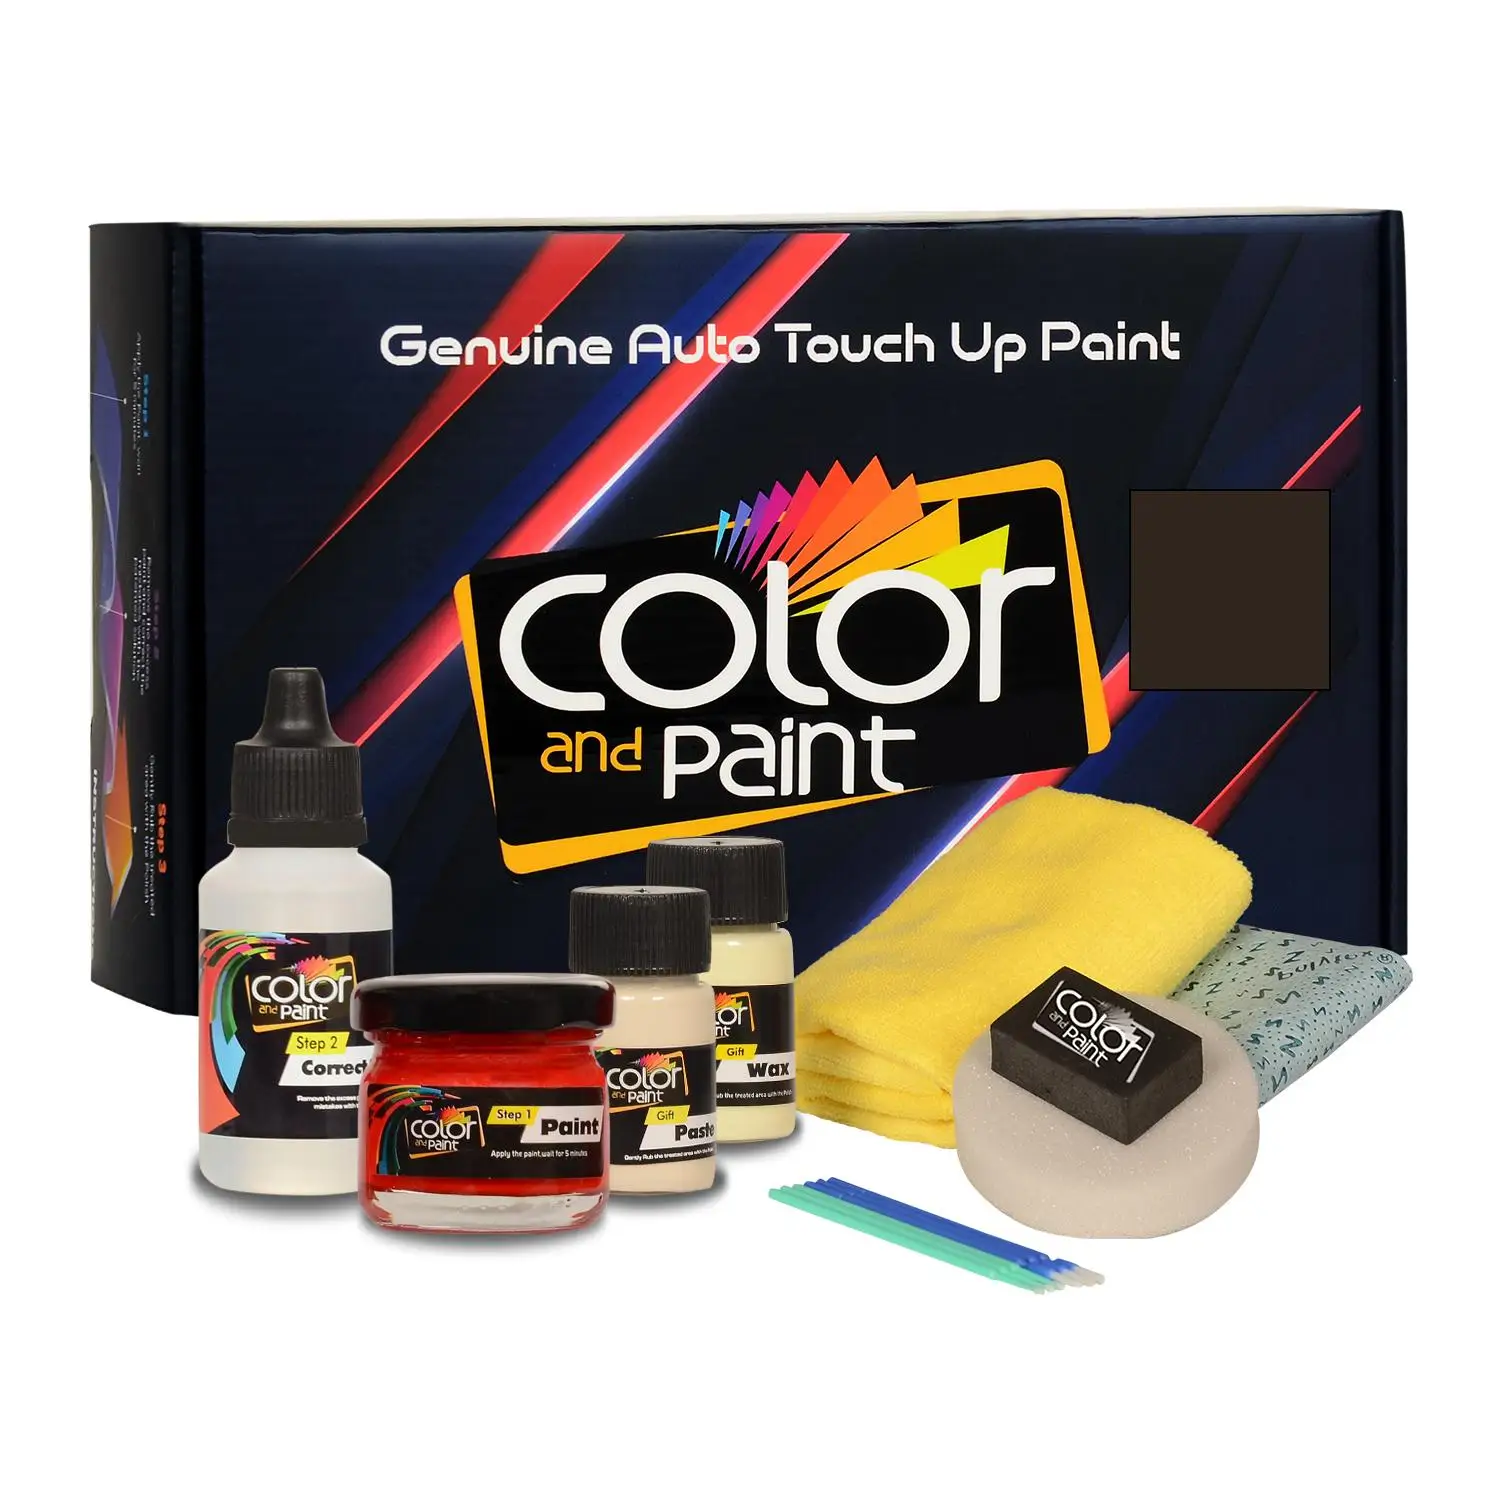 

Color and Paint compatible with Mercedes Automotive Touch Up Paint - PUEBLO BEIGE - 1651 - Basic Care